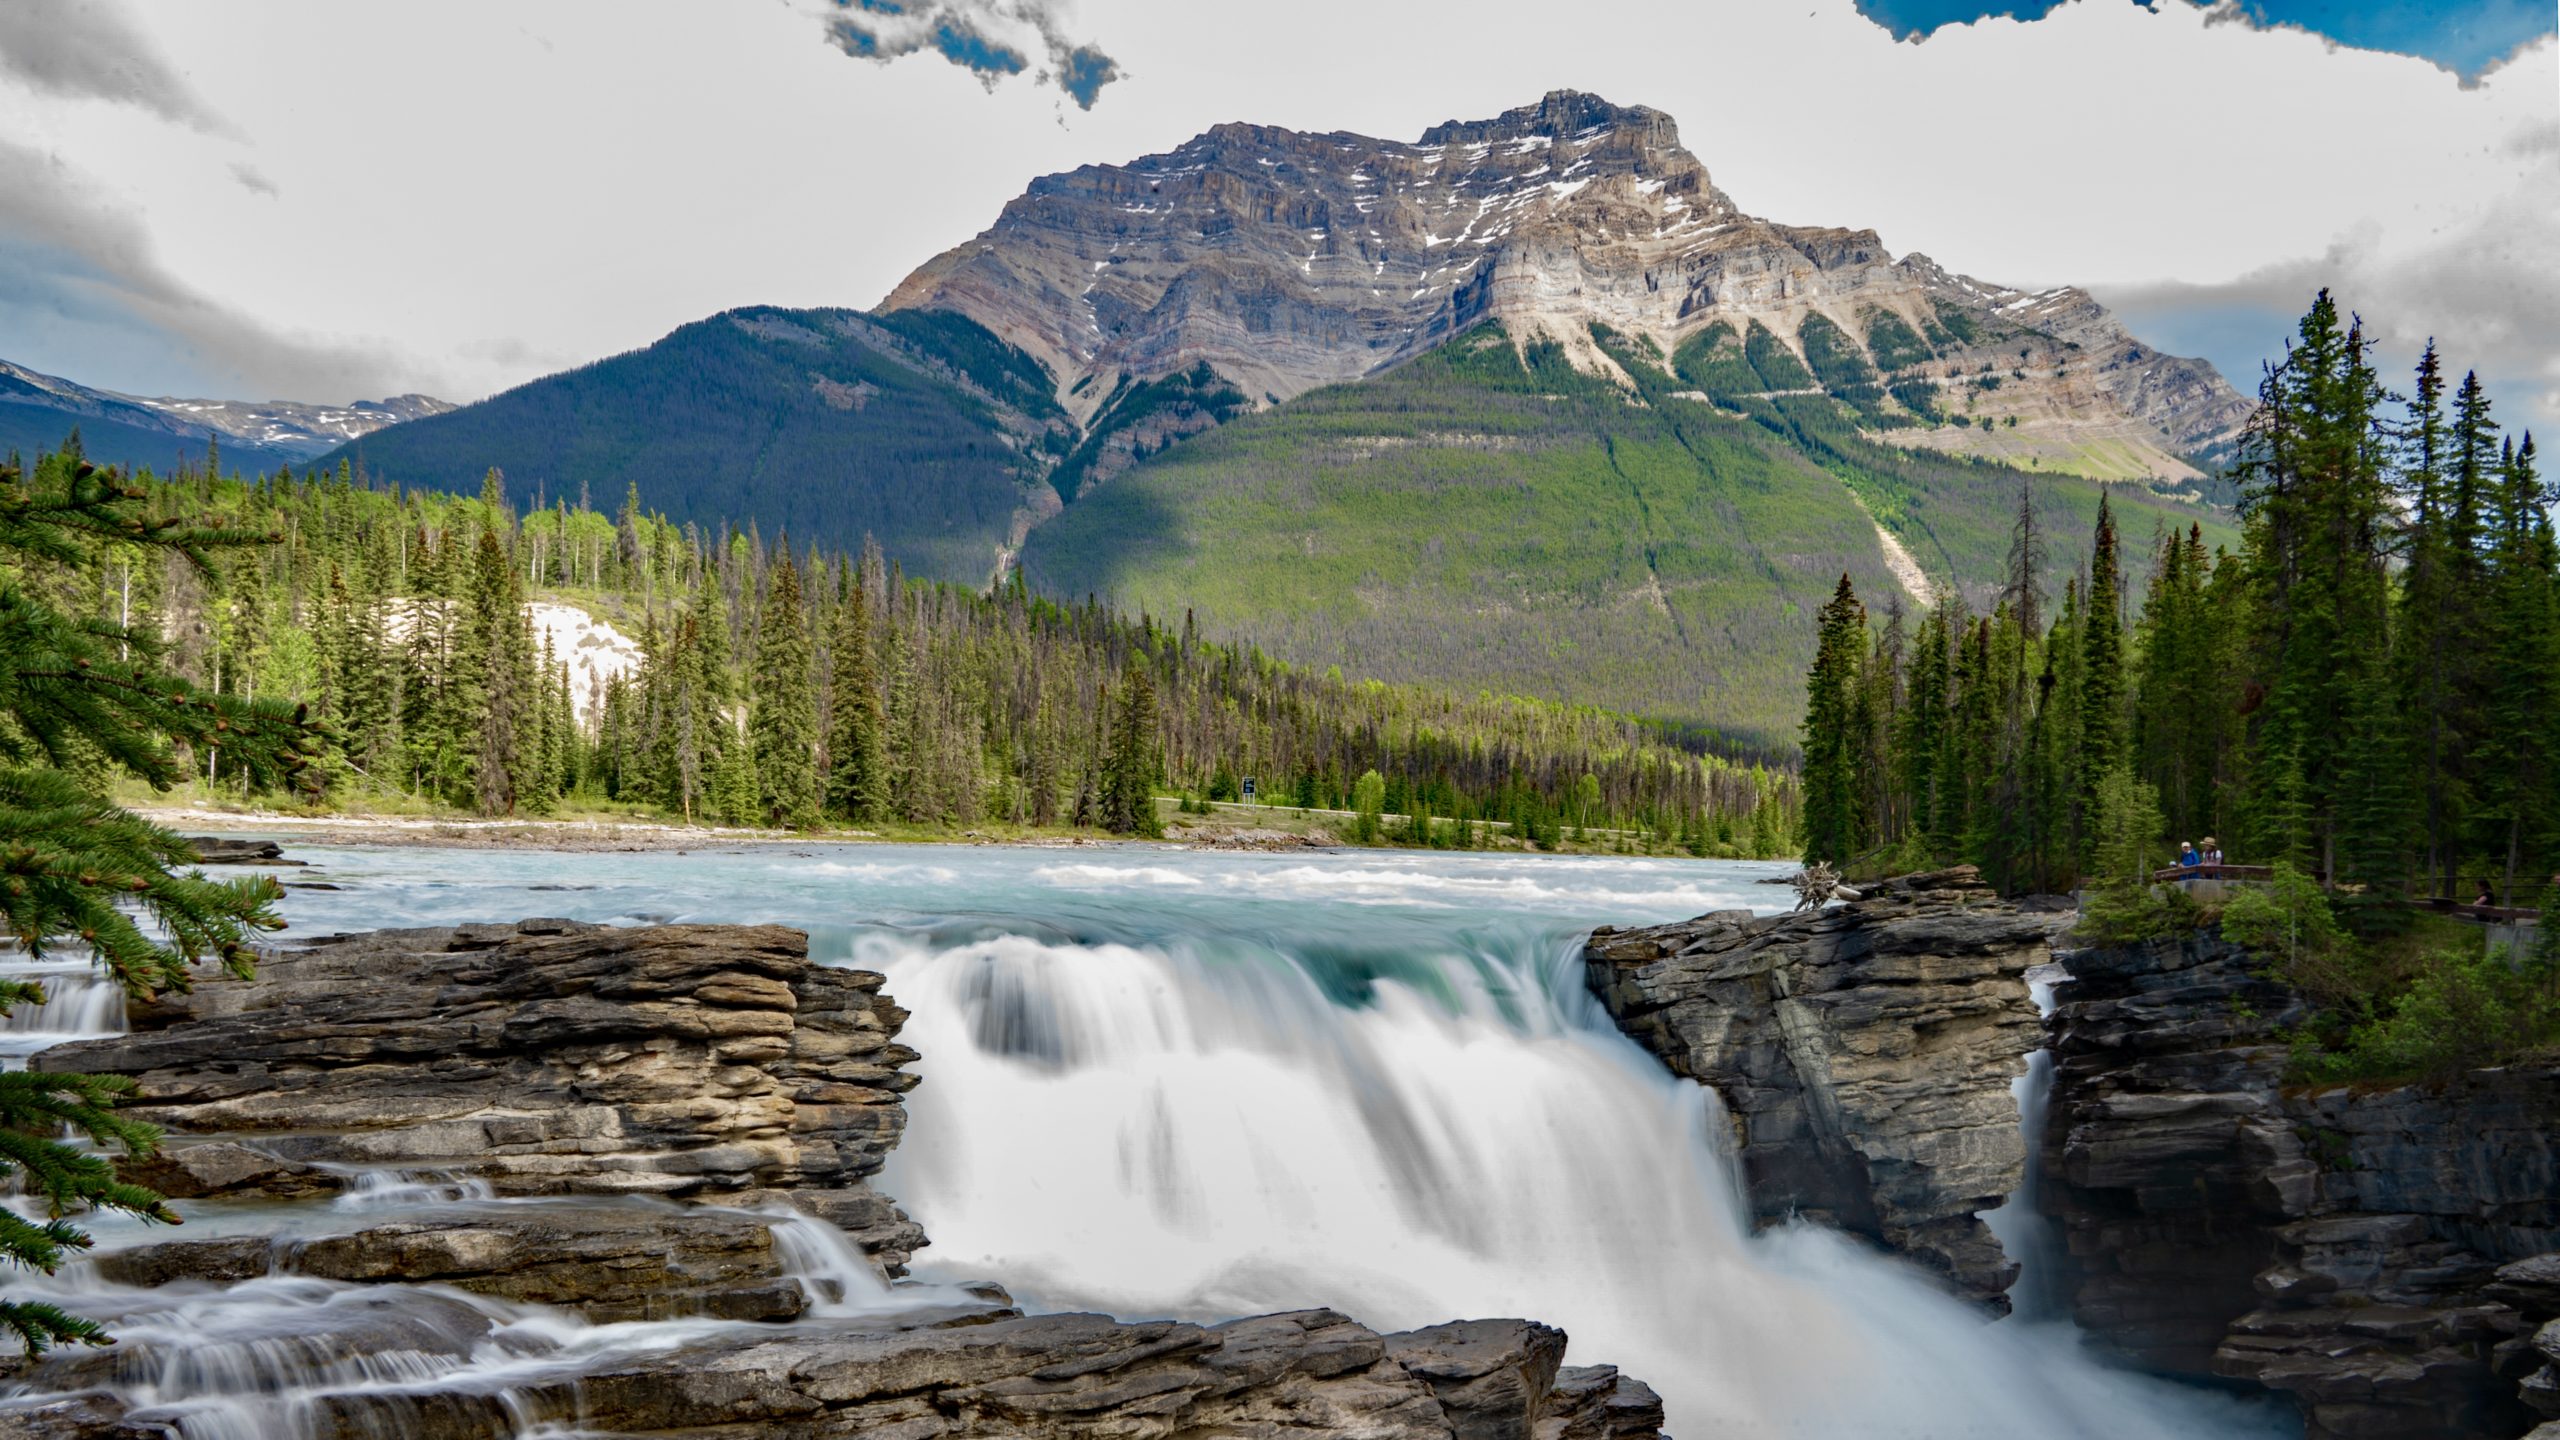 By Olly Athabasca Falls May